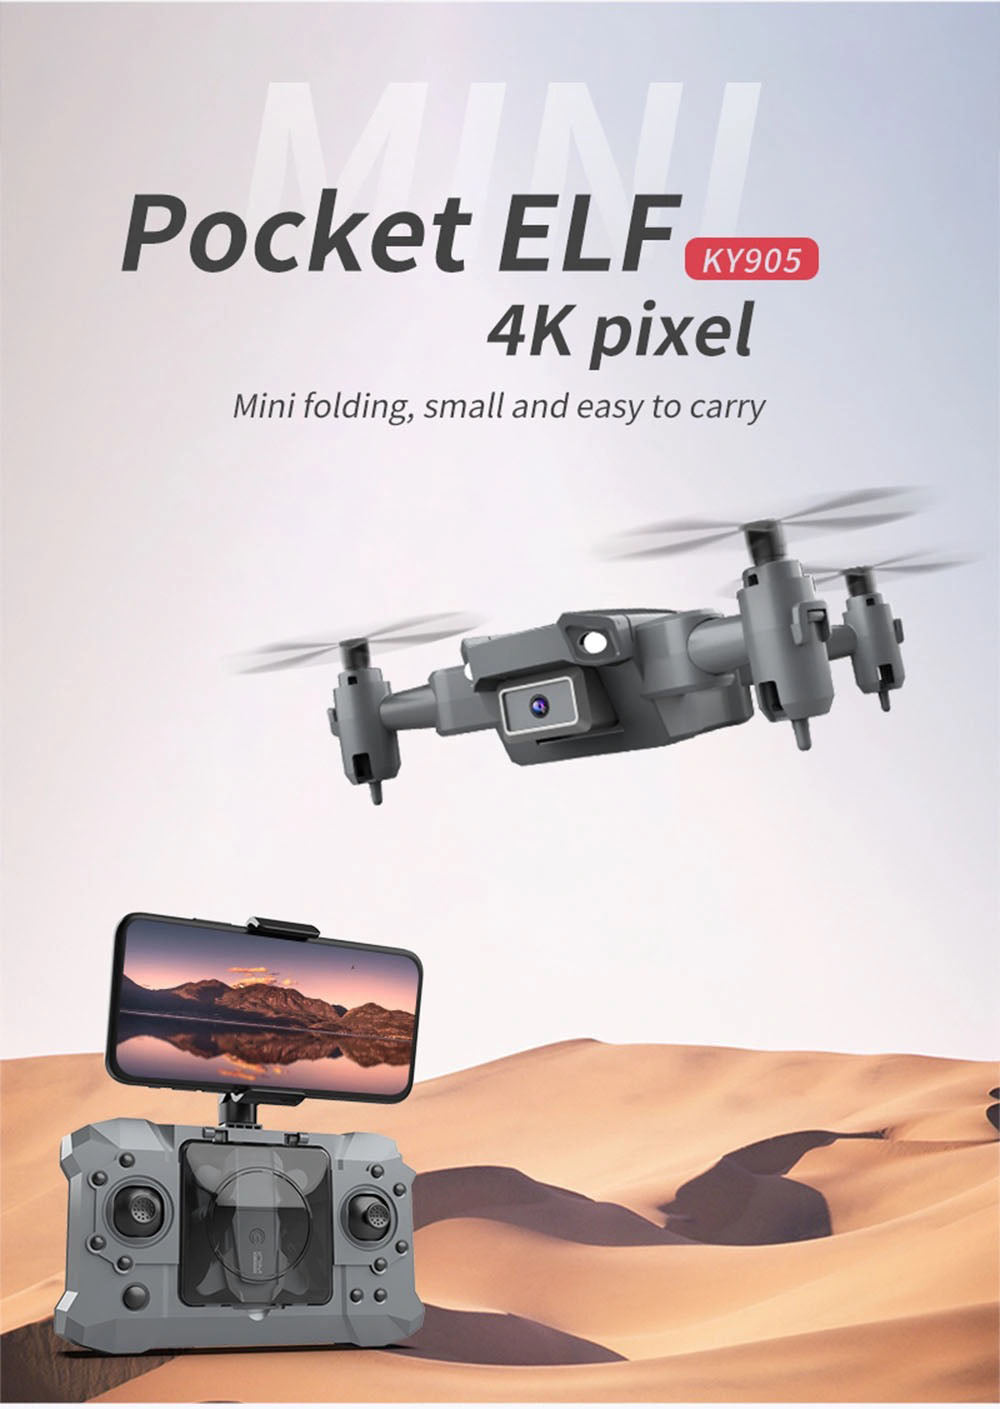 Ky905 drone pocket elf 4k pixel